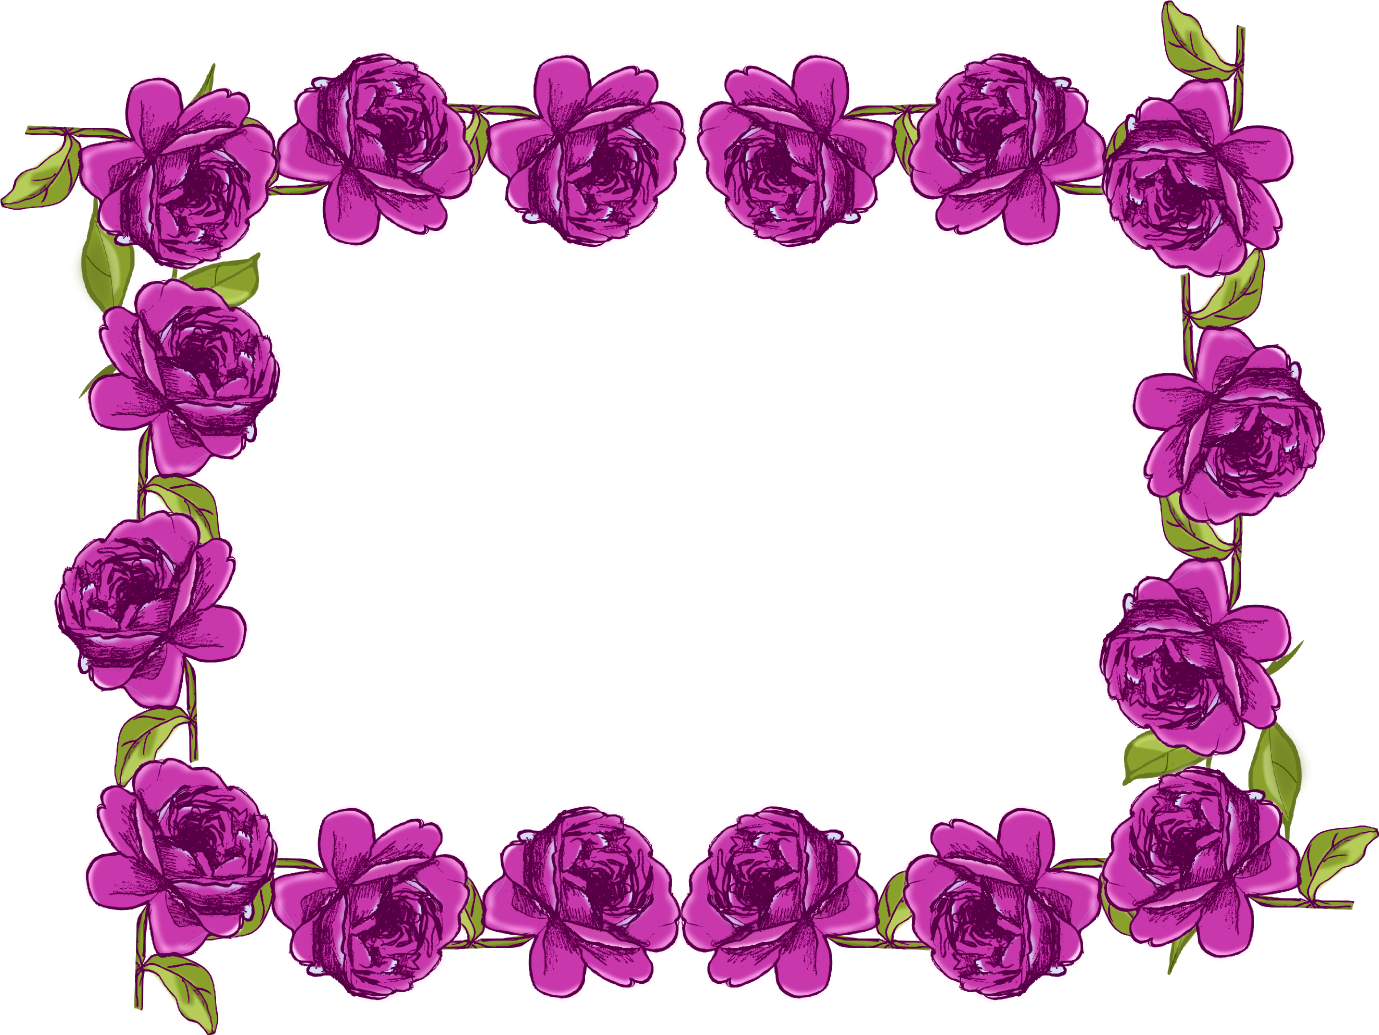 Free digital purple rose frame and border in vintage design ...